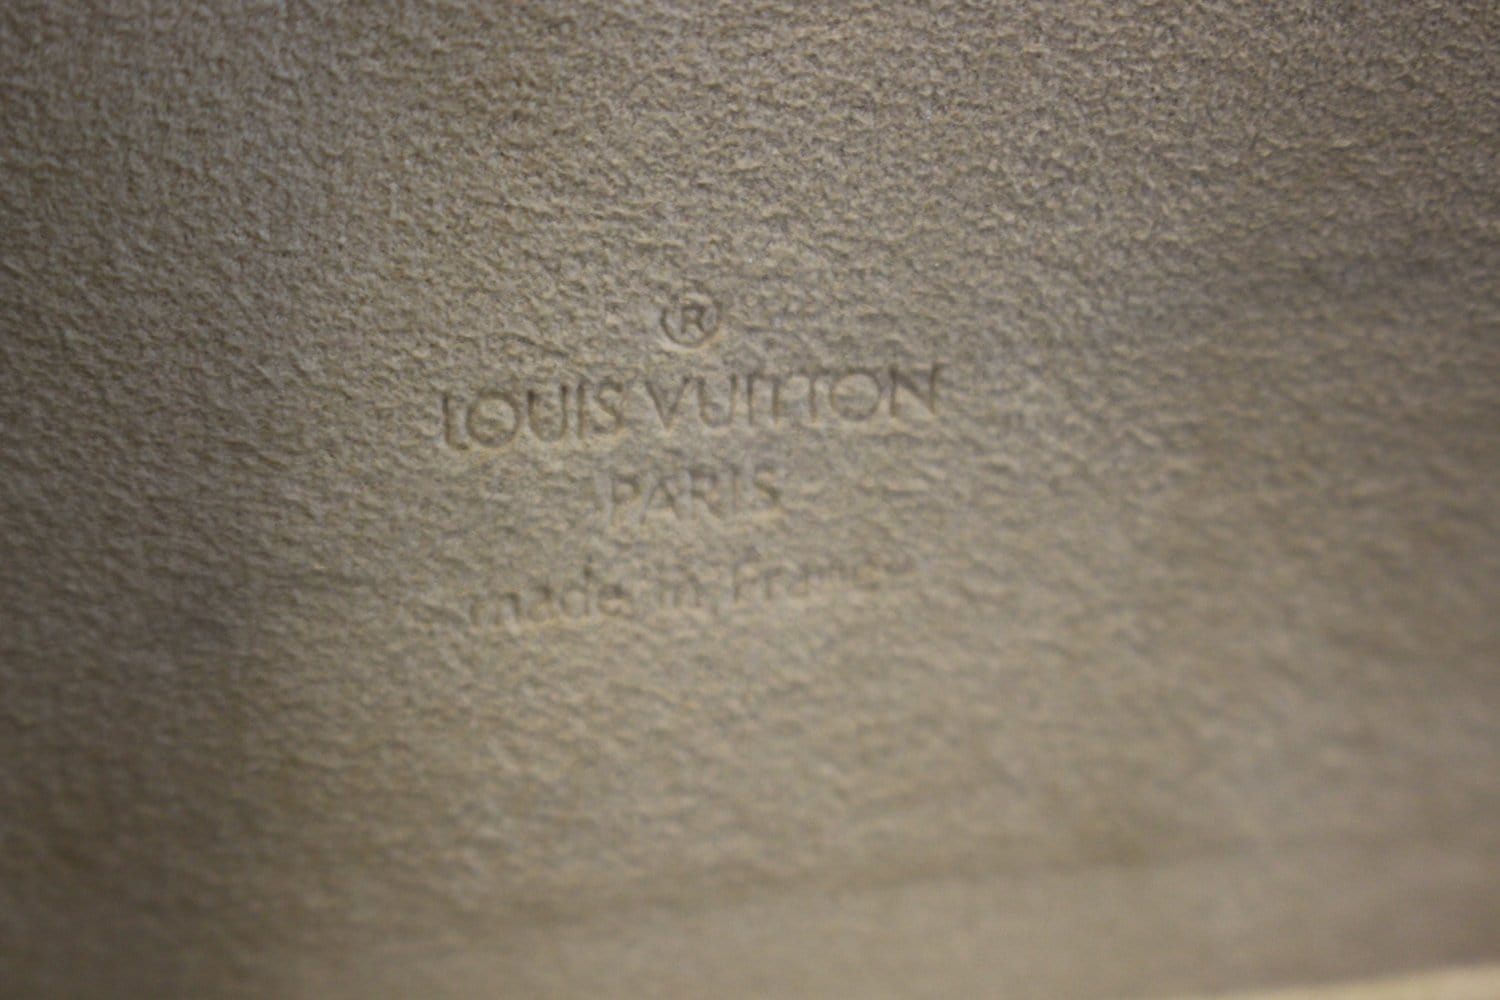 Louis Vuitton Monogram Canvas Theda GM Bag Louis Vuitton